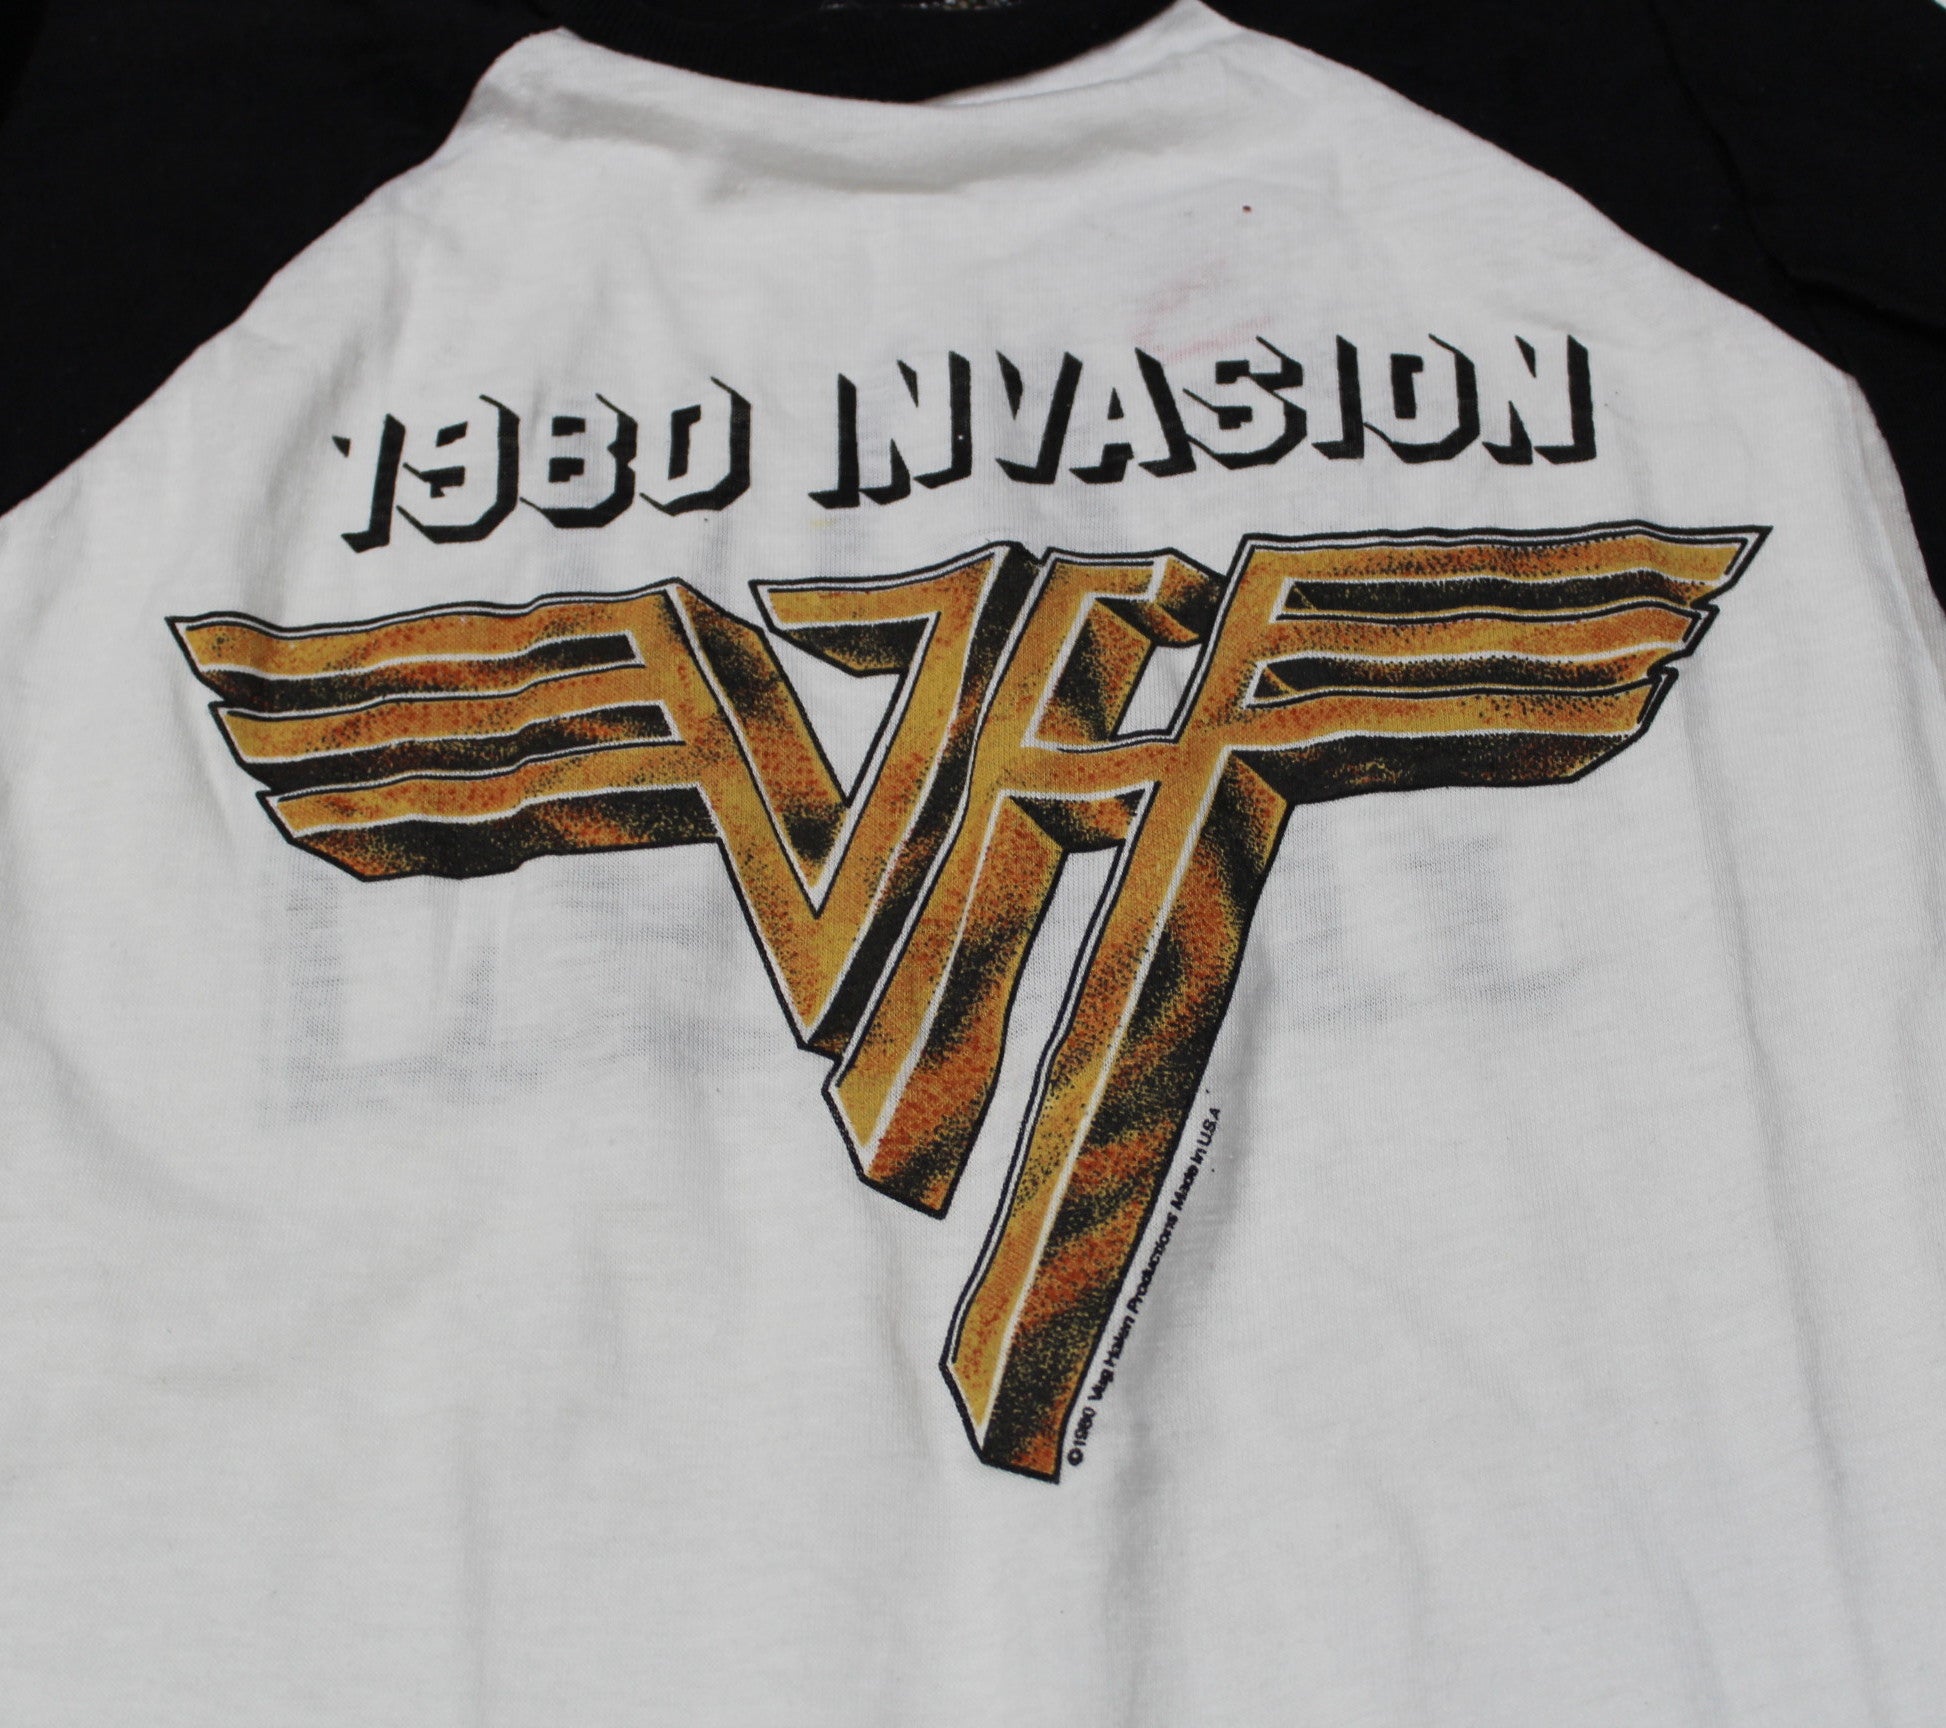 van halen 1980 invasion t shirt